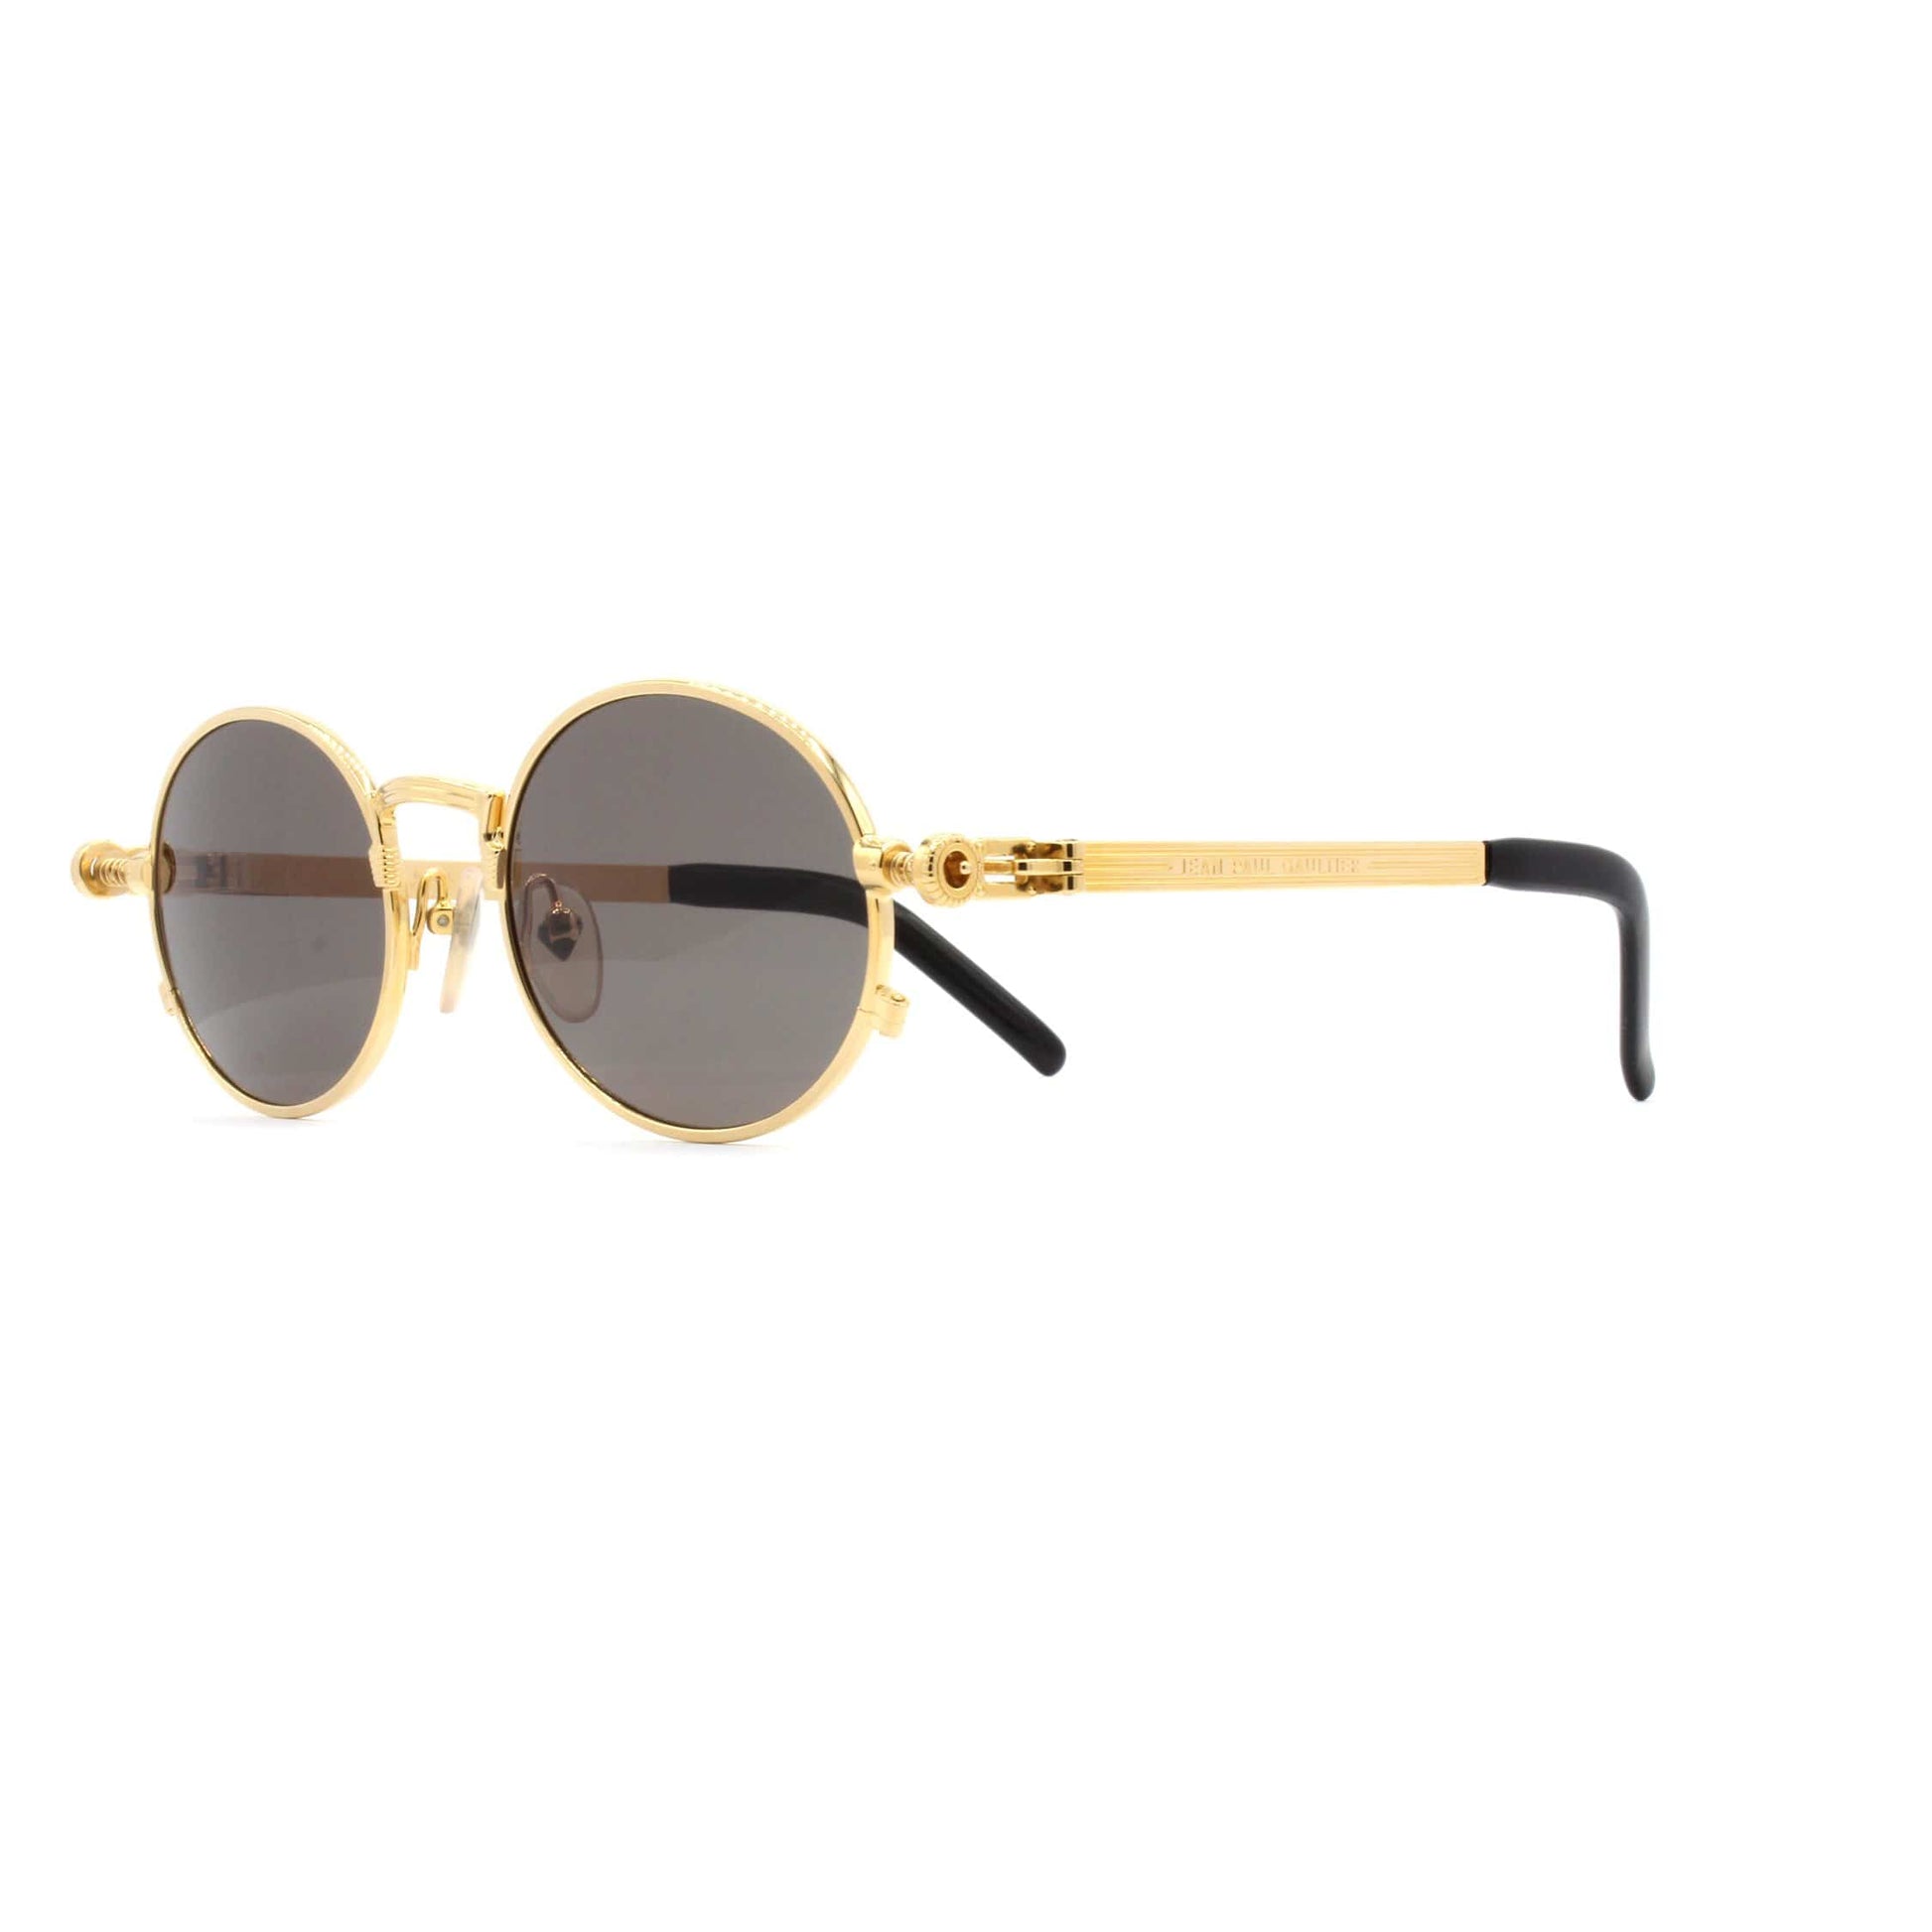 Gold Vintage Jean Paul Gaultier 56-4178 Sunglasses RSTKD Vintage